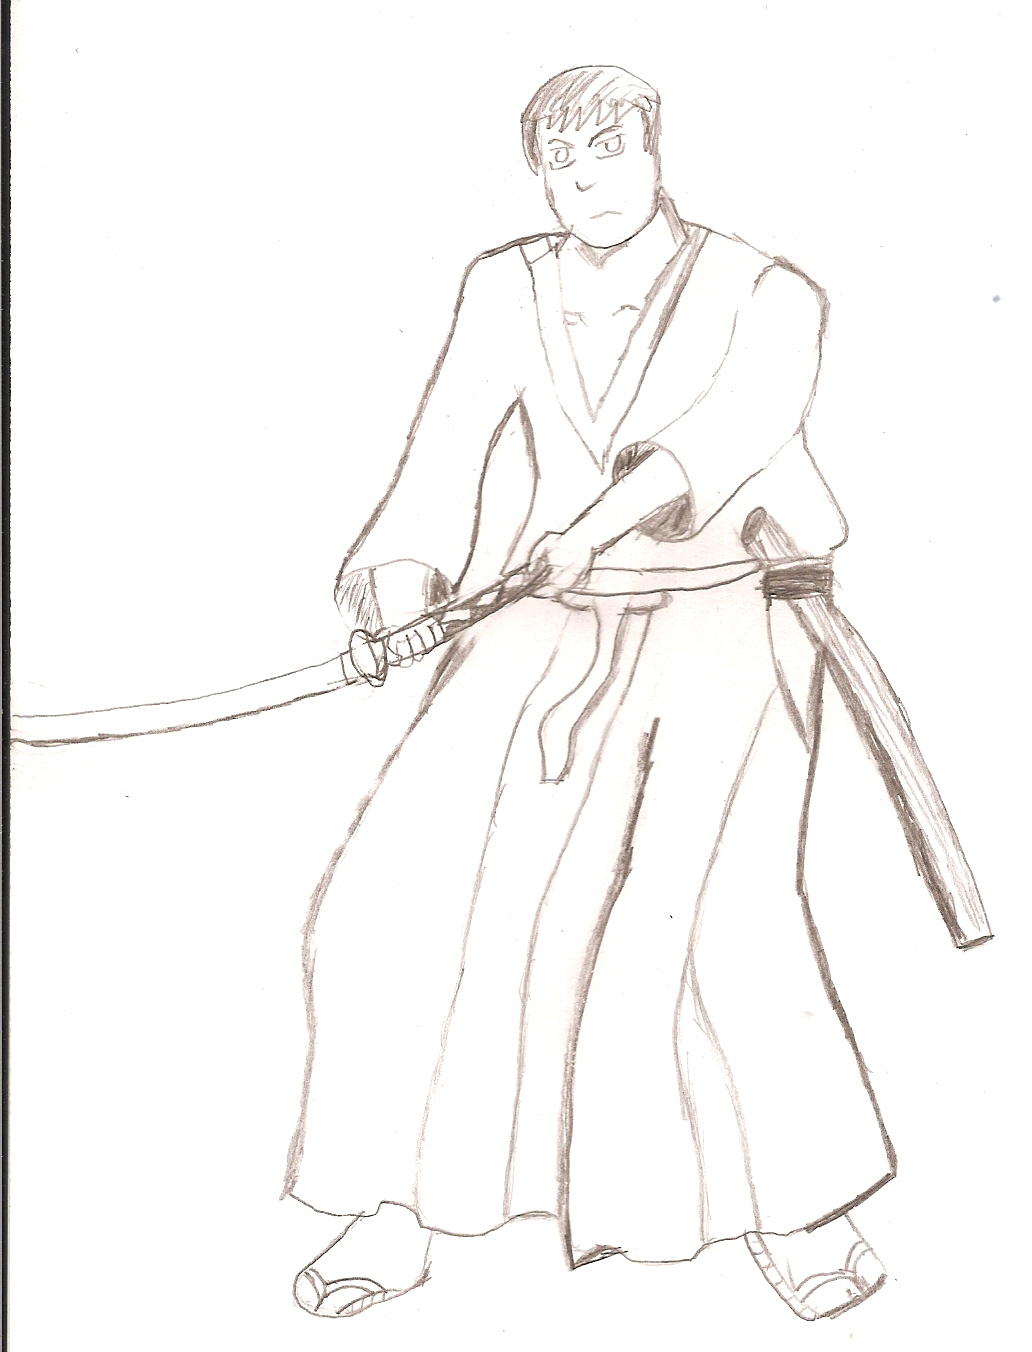 Ekyt as a Samurai by nextguardian